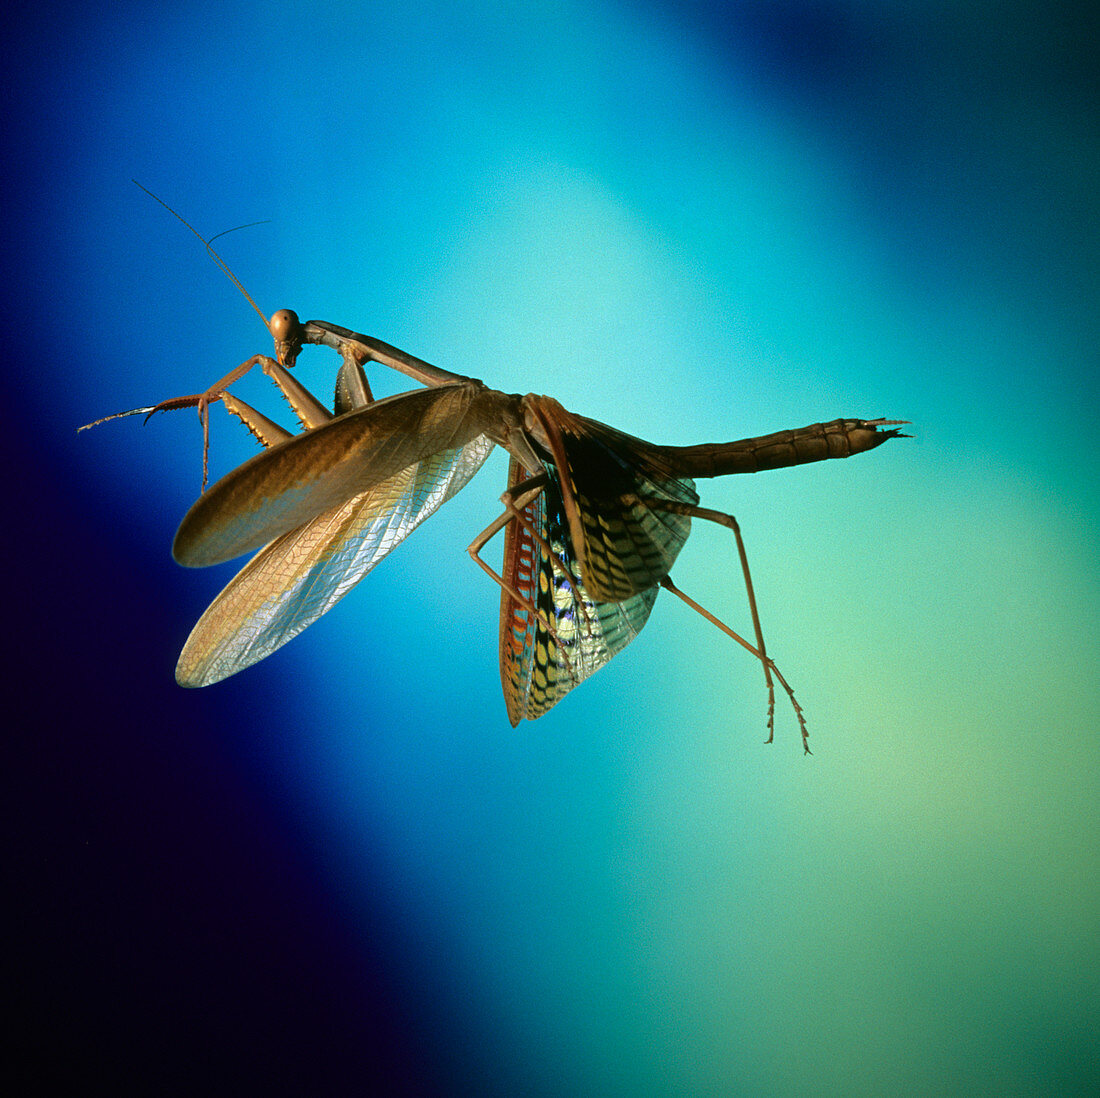 Praying mantis in flight